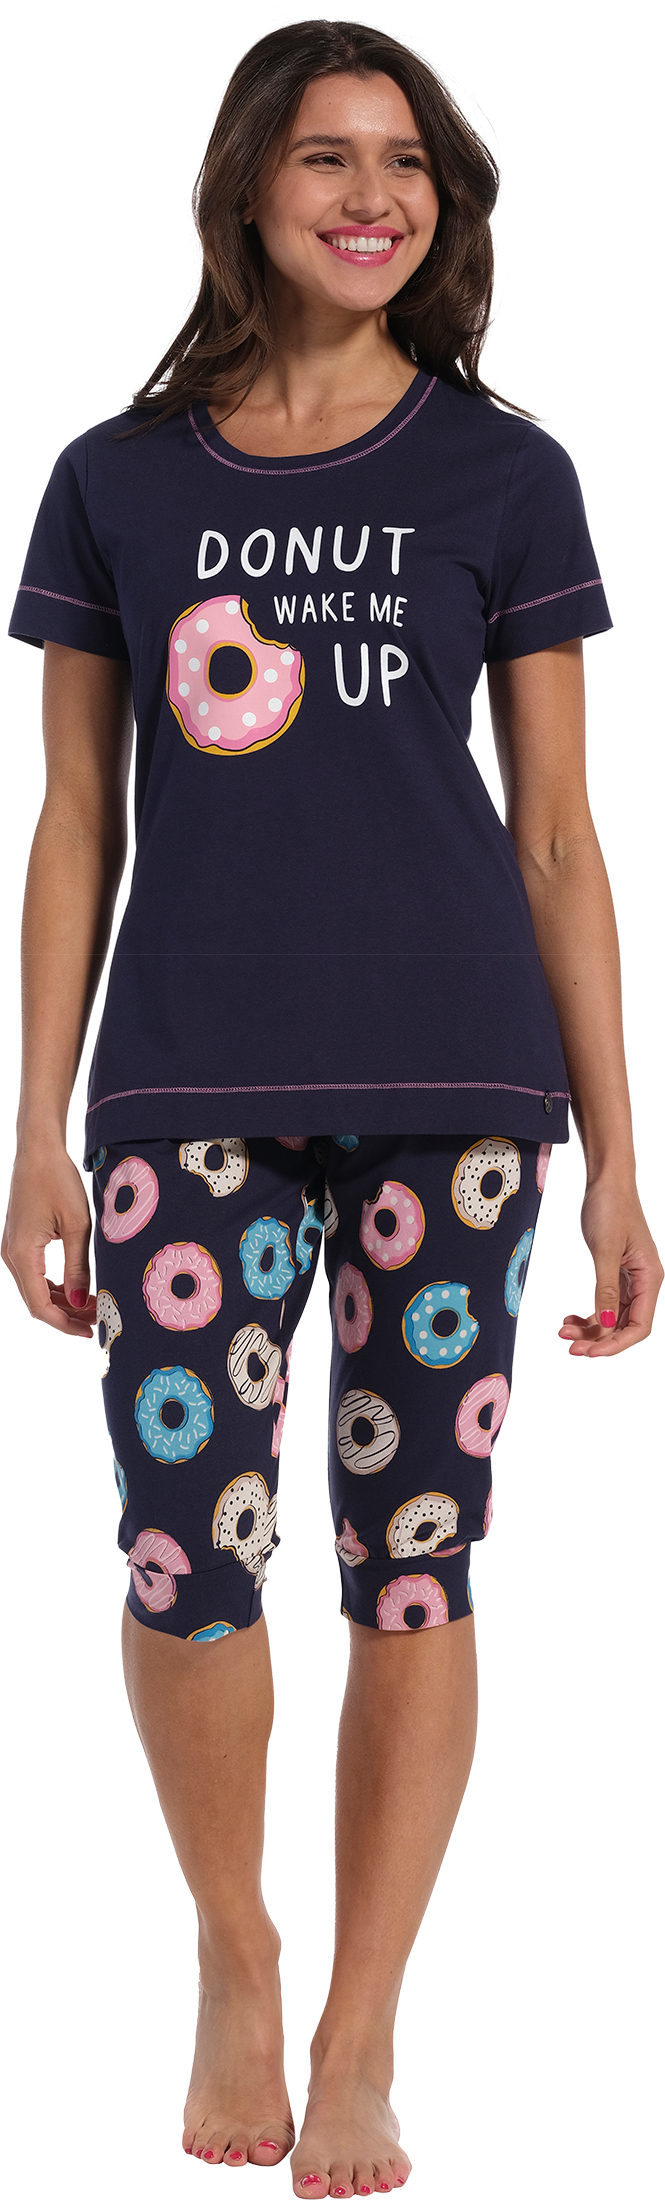 Rebelle Donut- Pyjamaset - Dames – Blauw - Maat 38